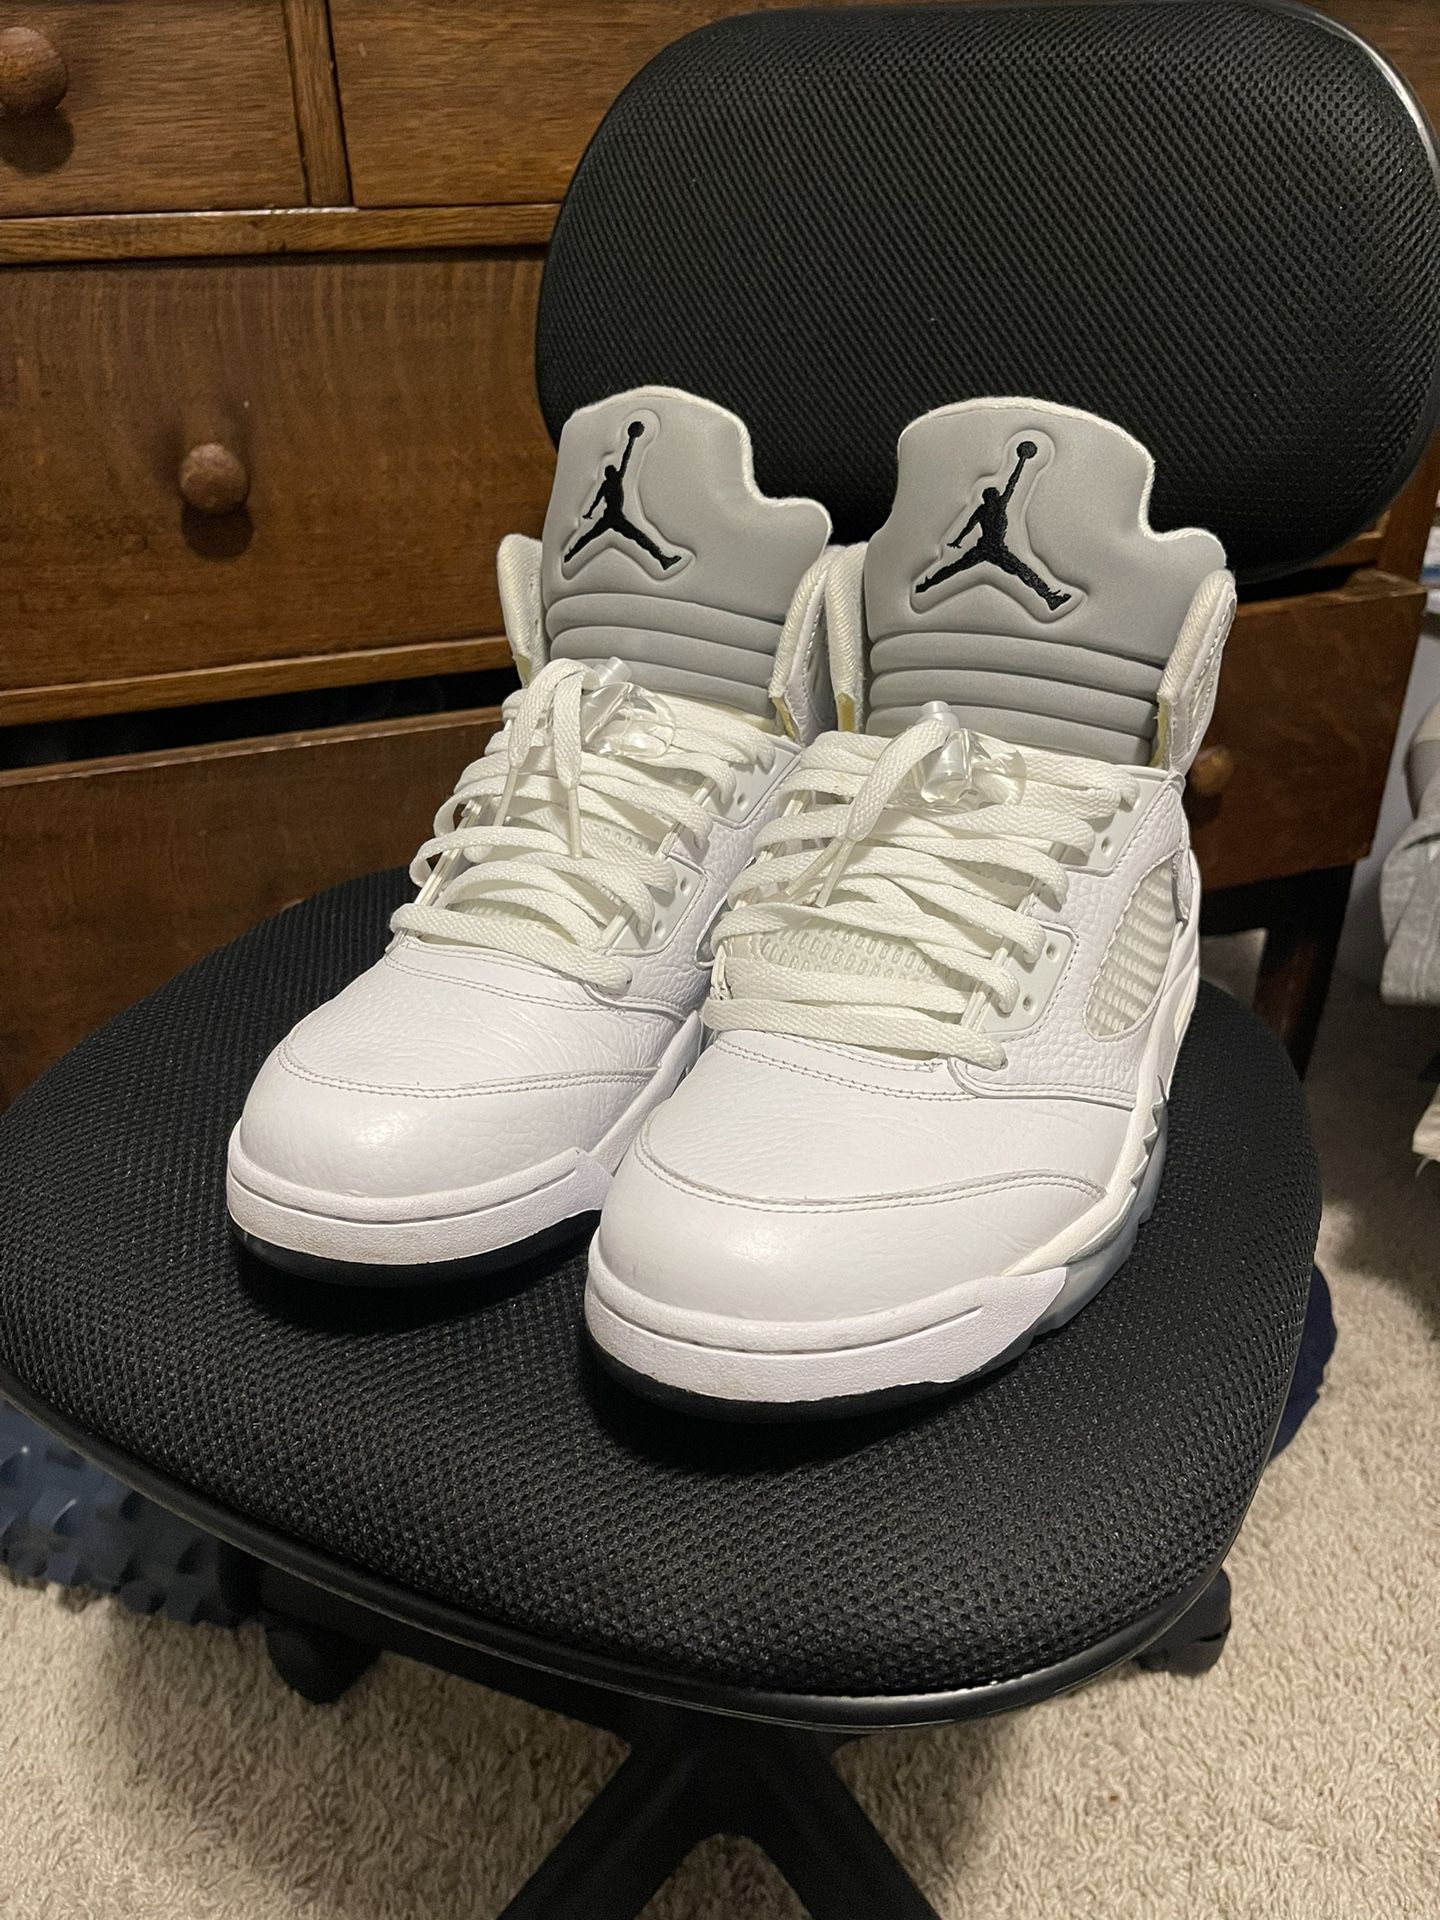 Jordan 5 Retro White Metallic Size 12.5 